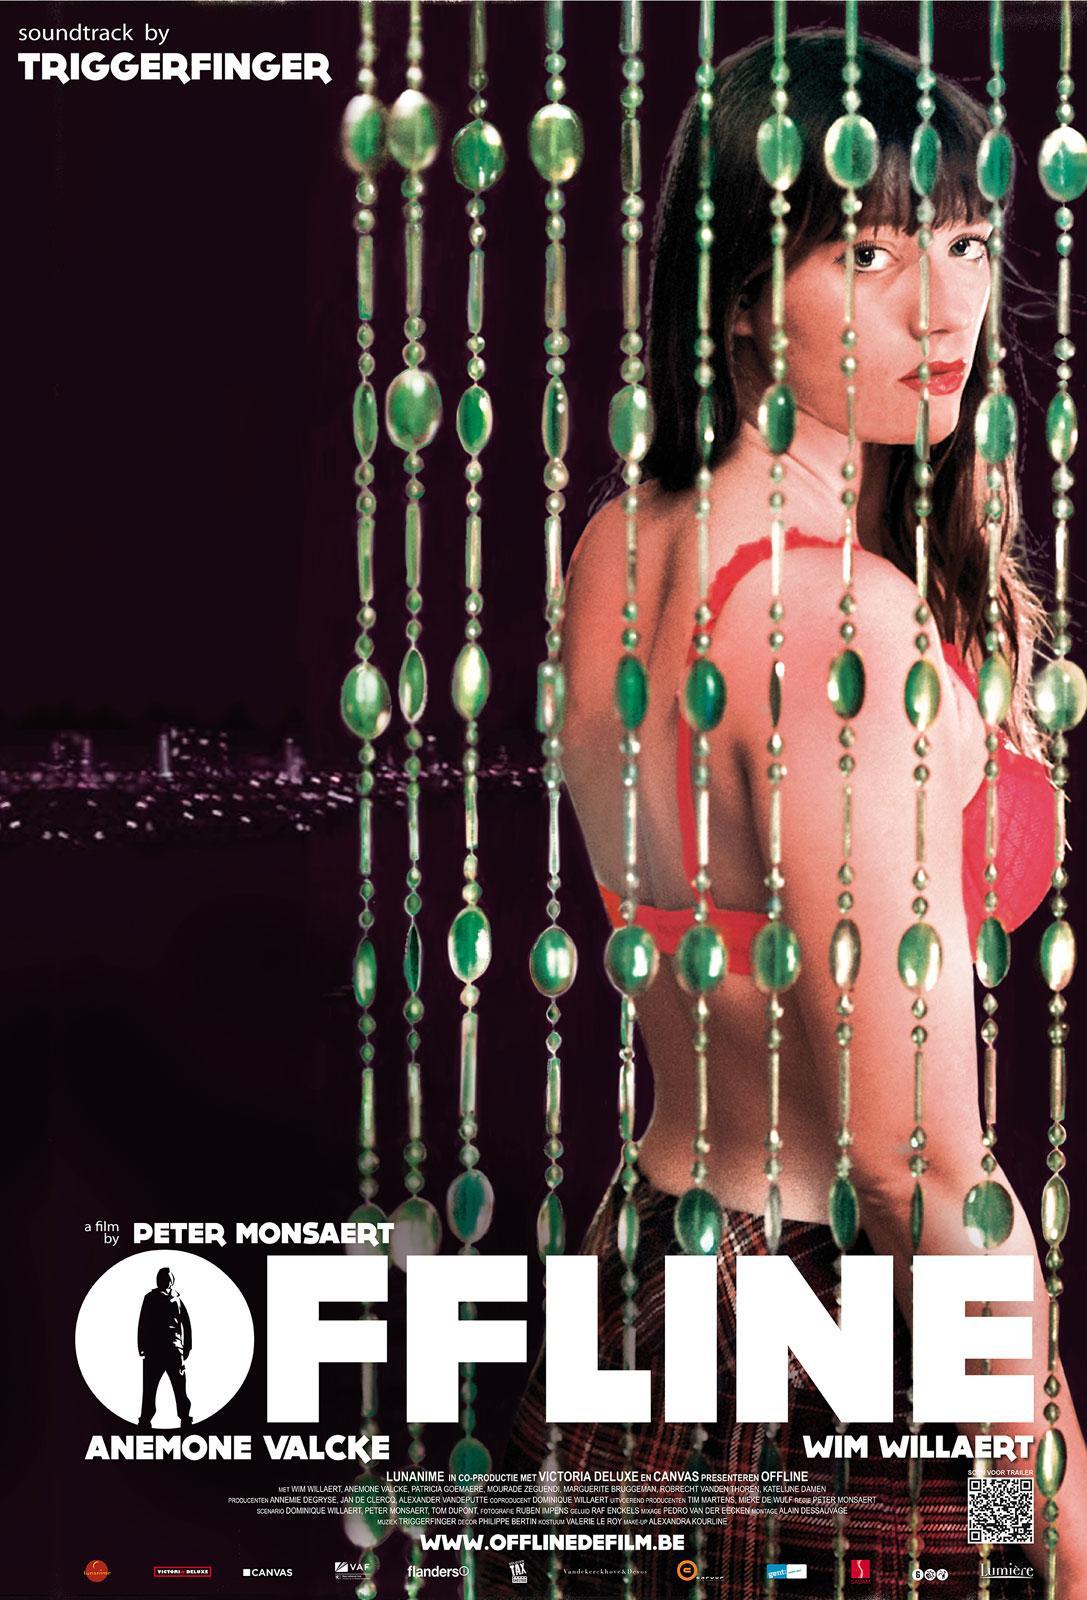 Постер фильма Offline